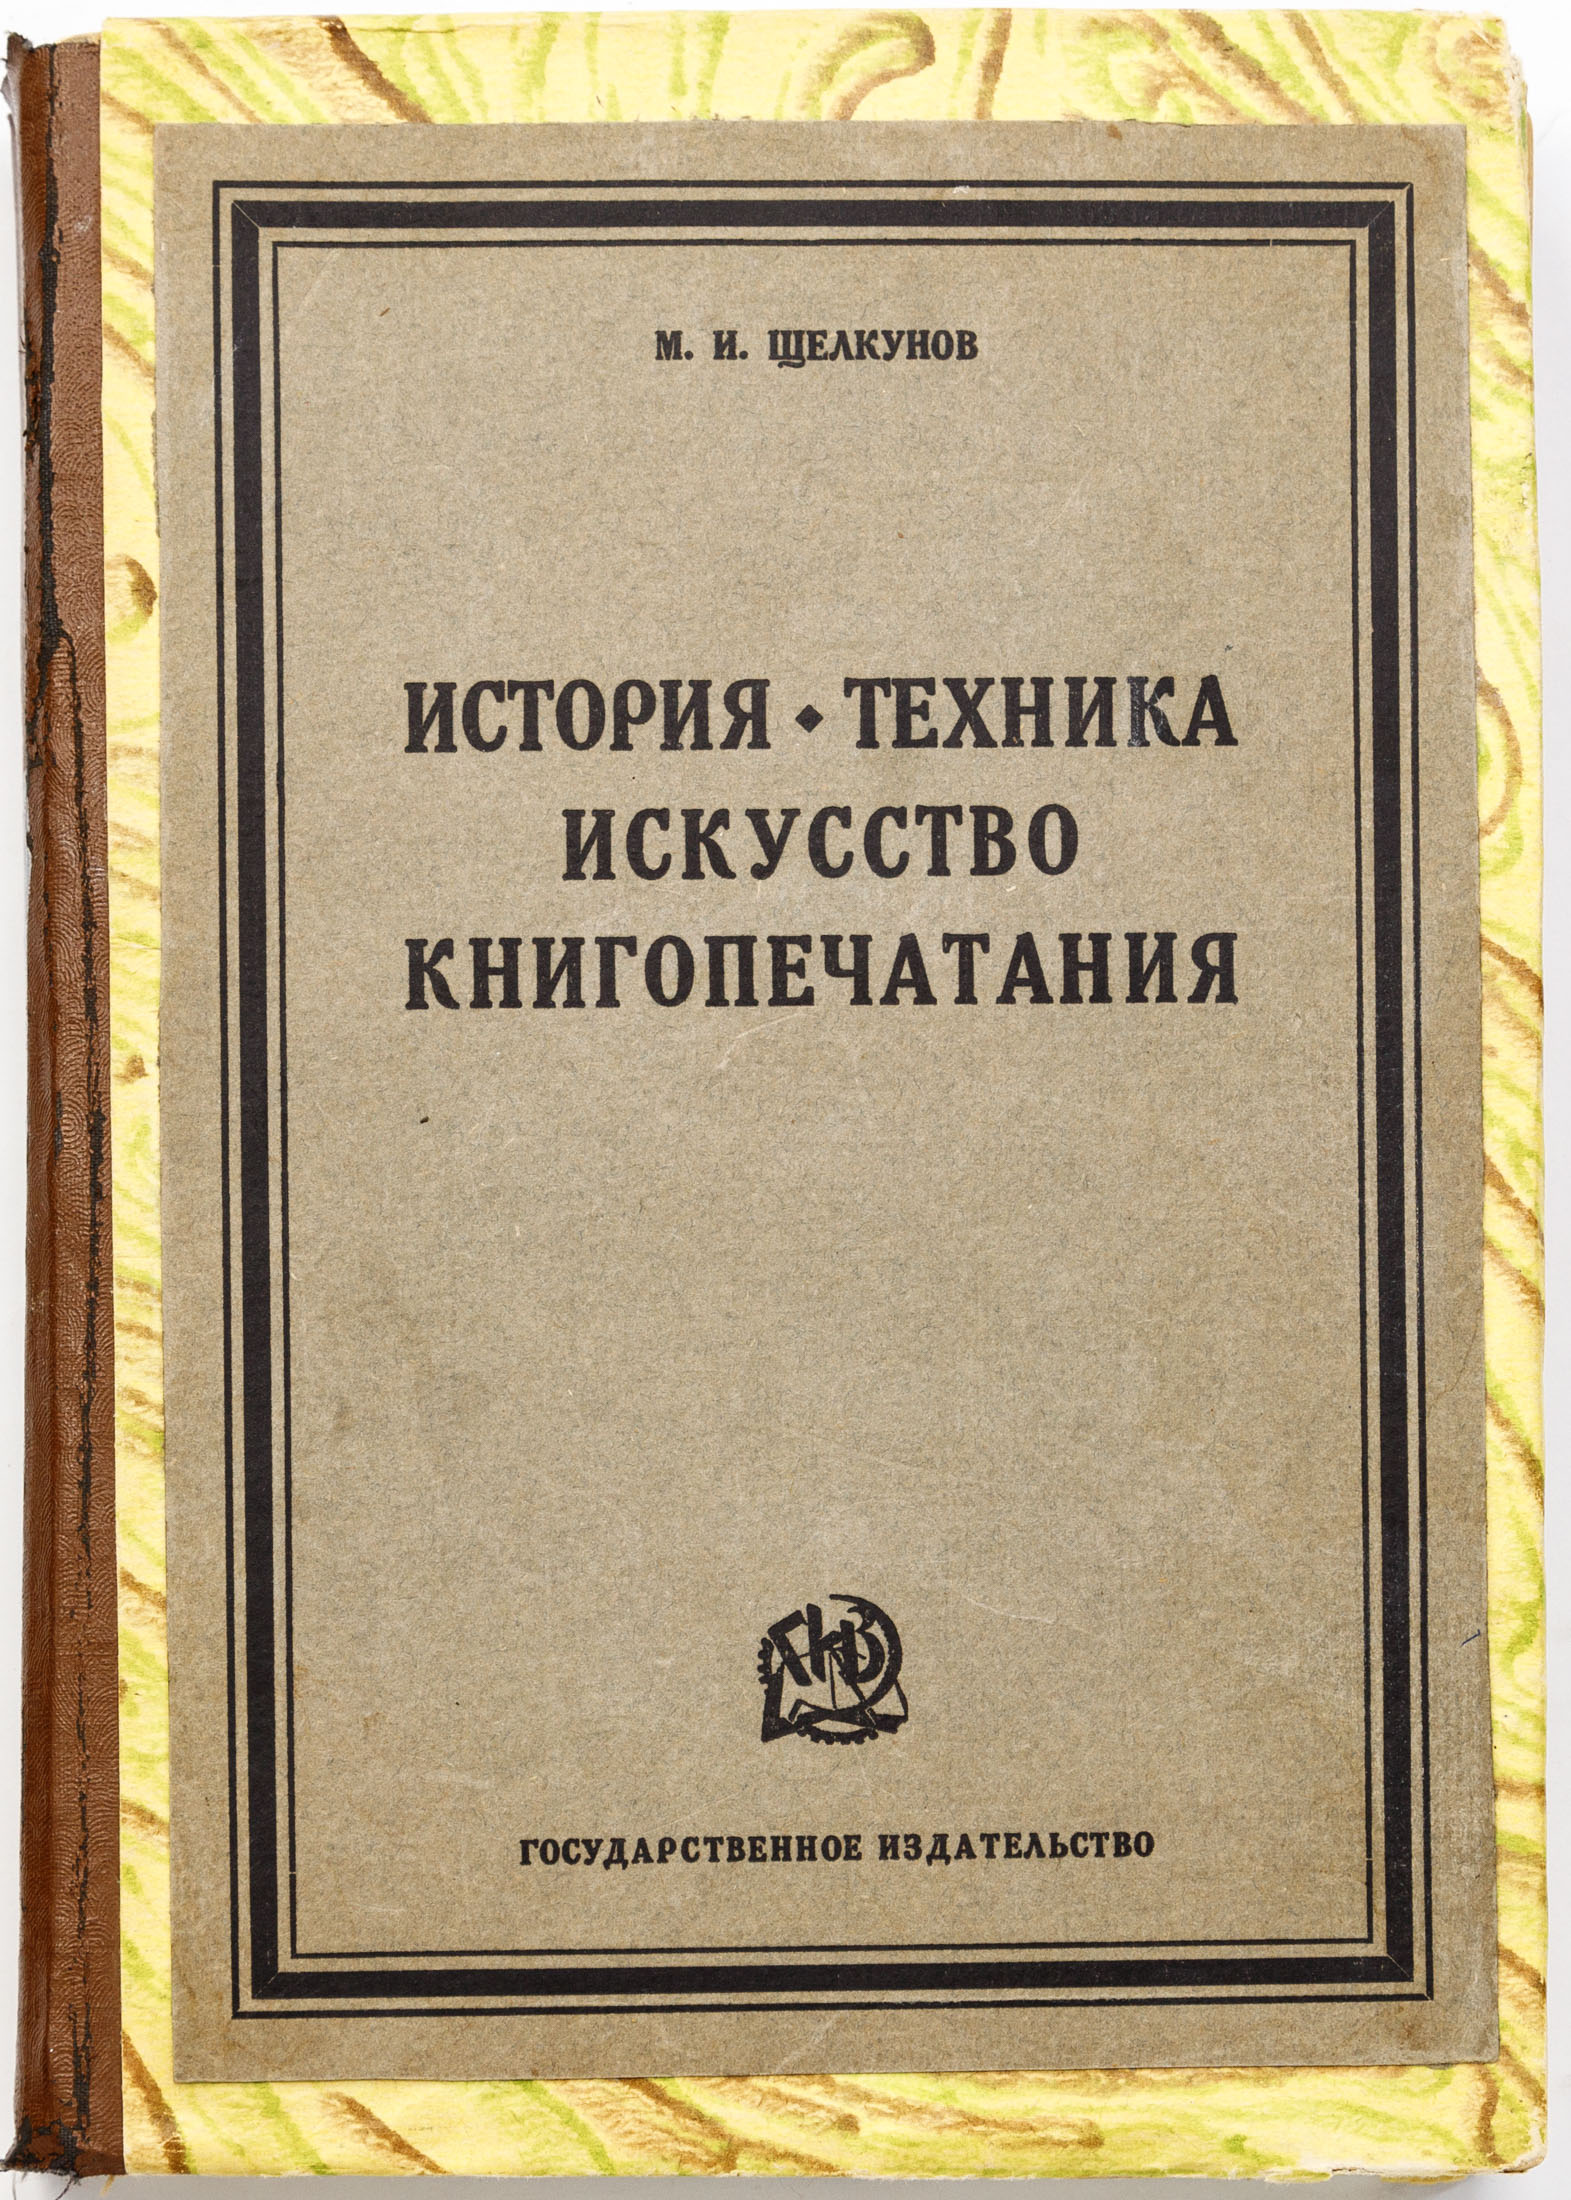 Щелкунов М.И. История, техника, искусство книгопечатания: 330 иллюстраций и приложений